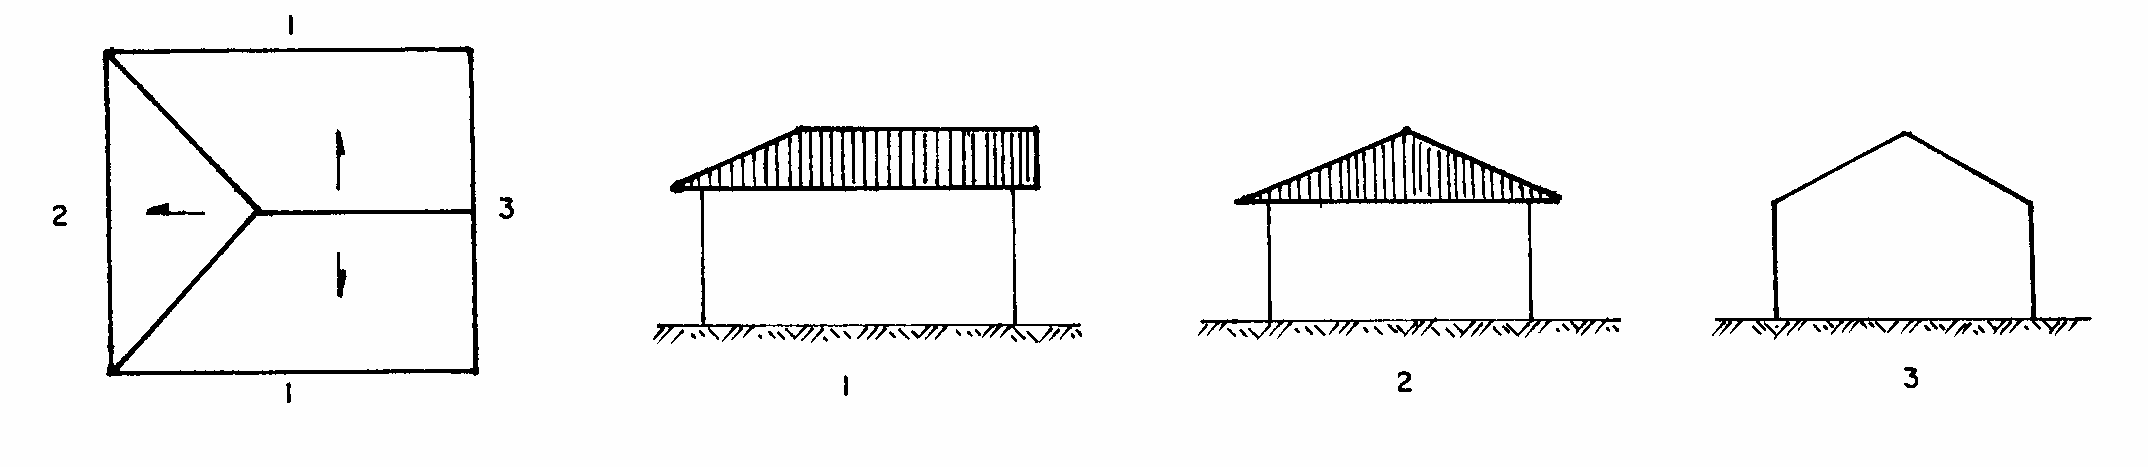 COM TRÊS ÁGUAS: Figura 6.49 - Telhados com três águas (Borges, 1972) COM QUATRO ÁGUAS: Figura 6.